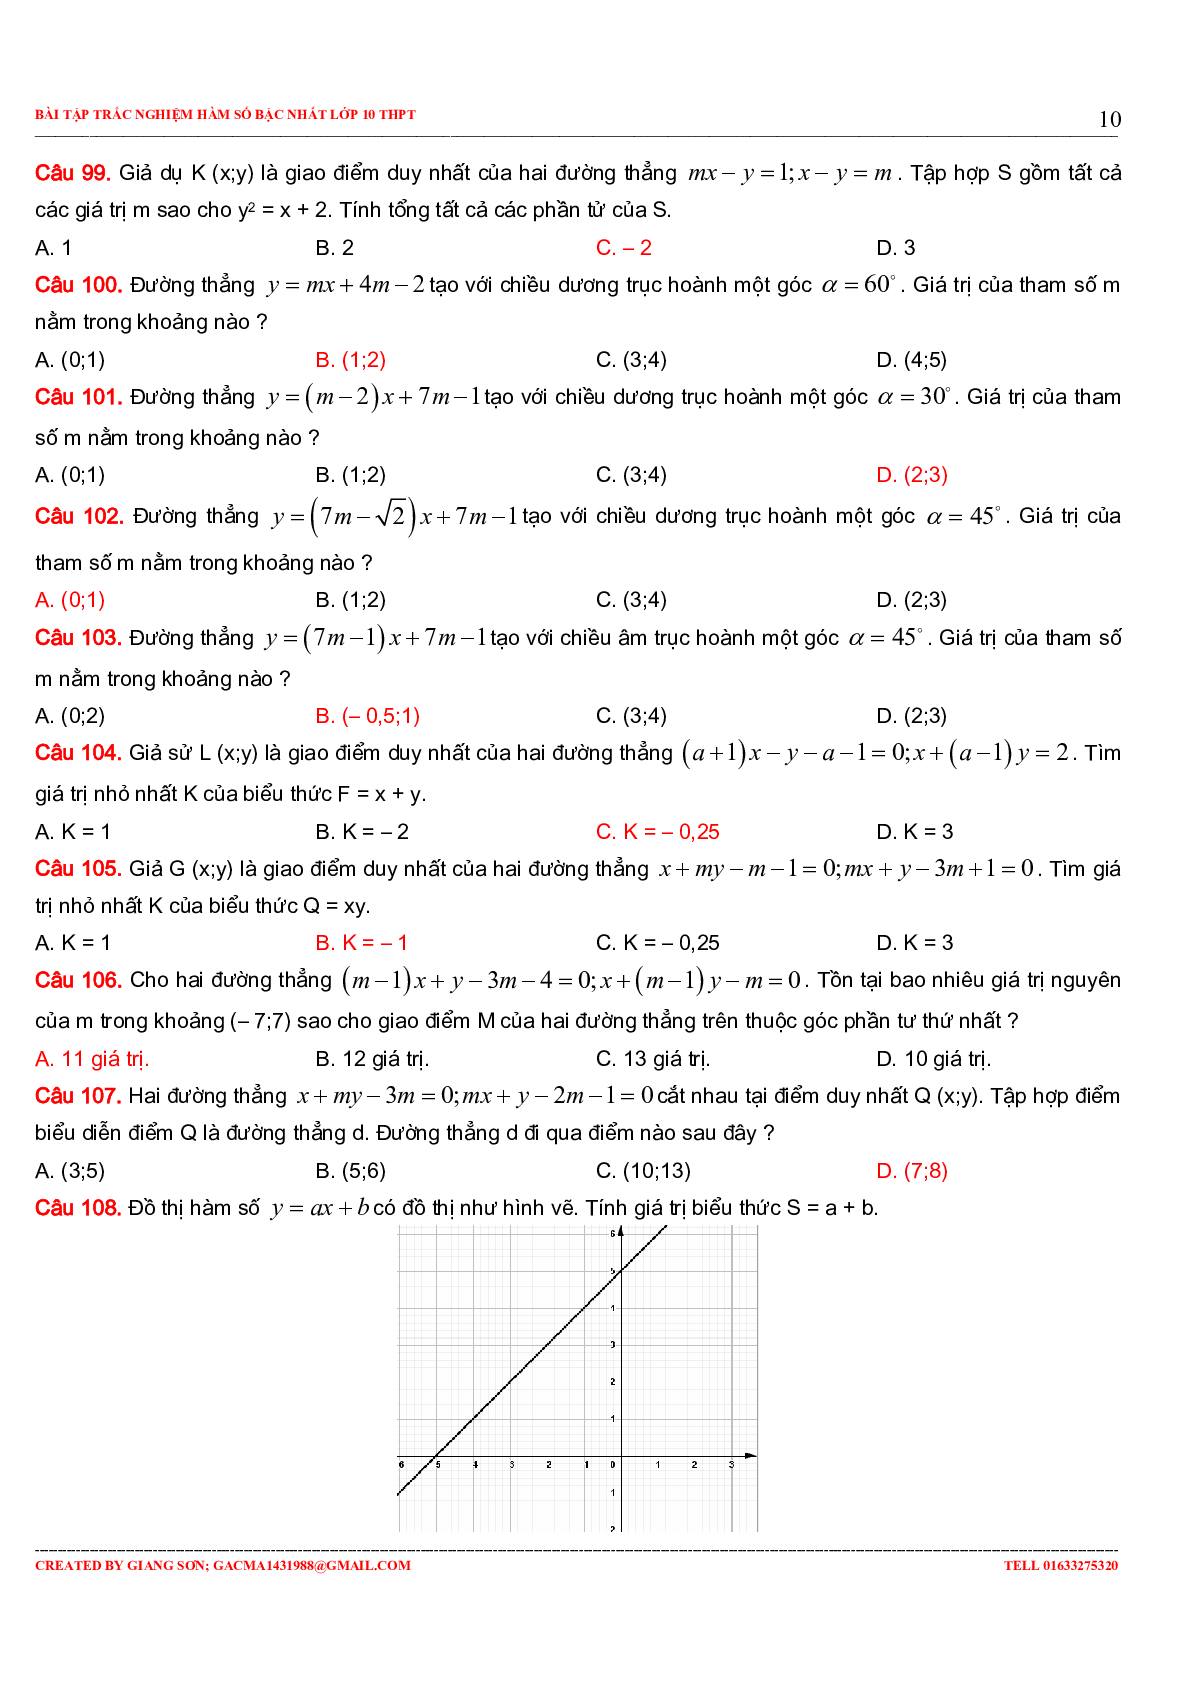 229 bài tập trắc nghiệm hàm số bậc nhất (trang 10)